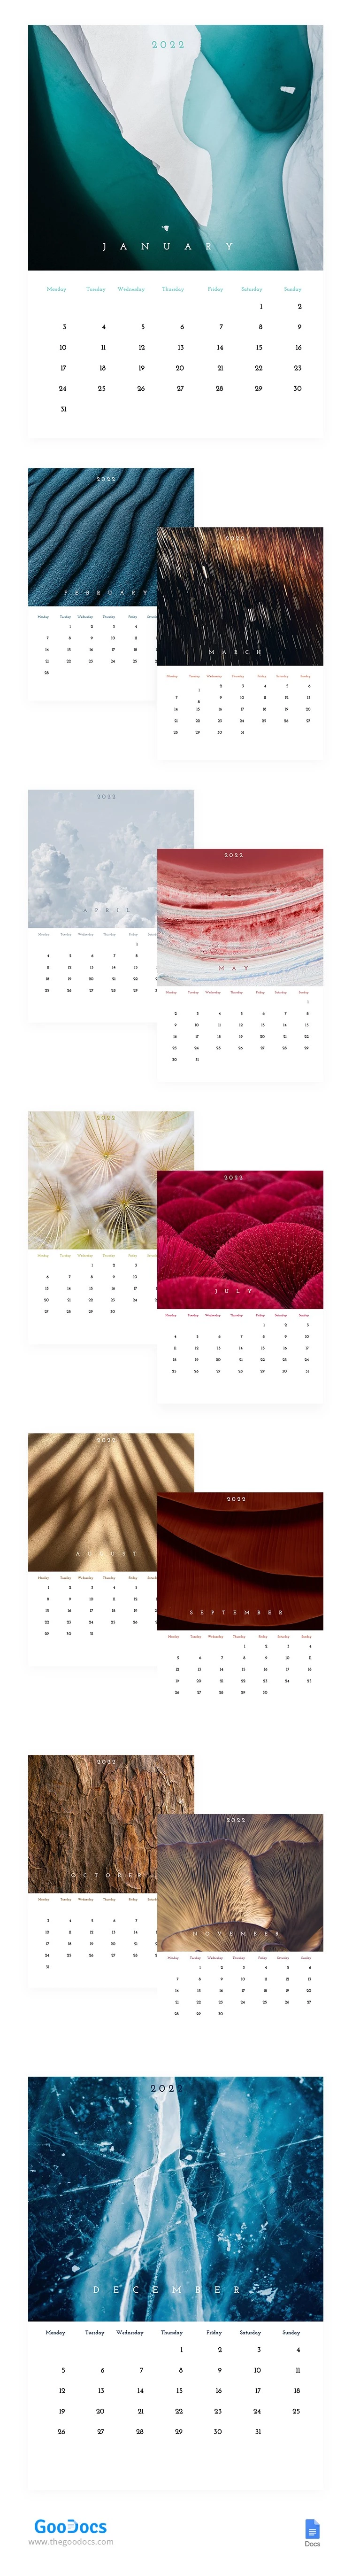 Natur Textur Kalender - free Google Docs Template - 10062278